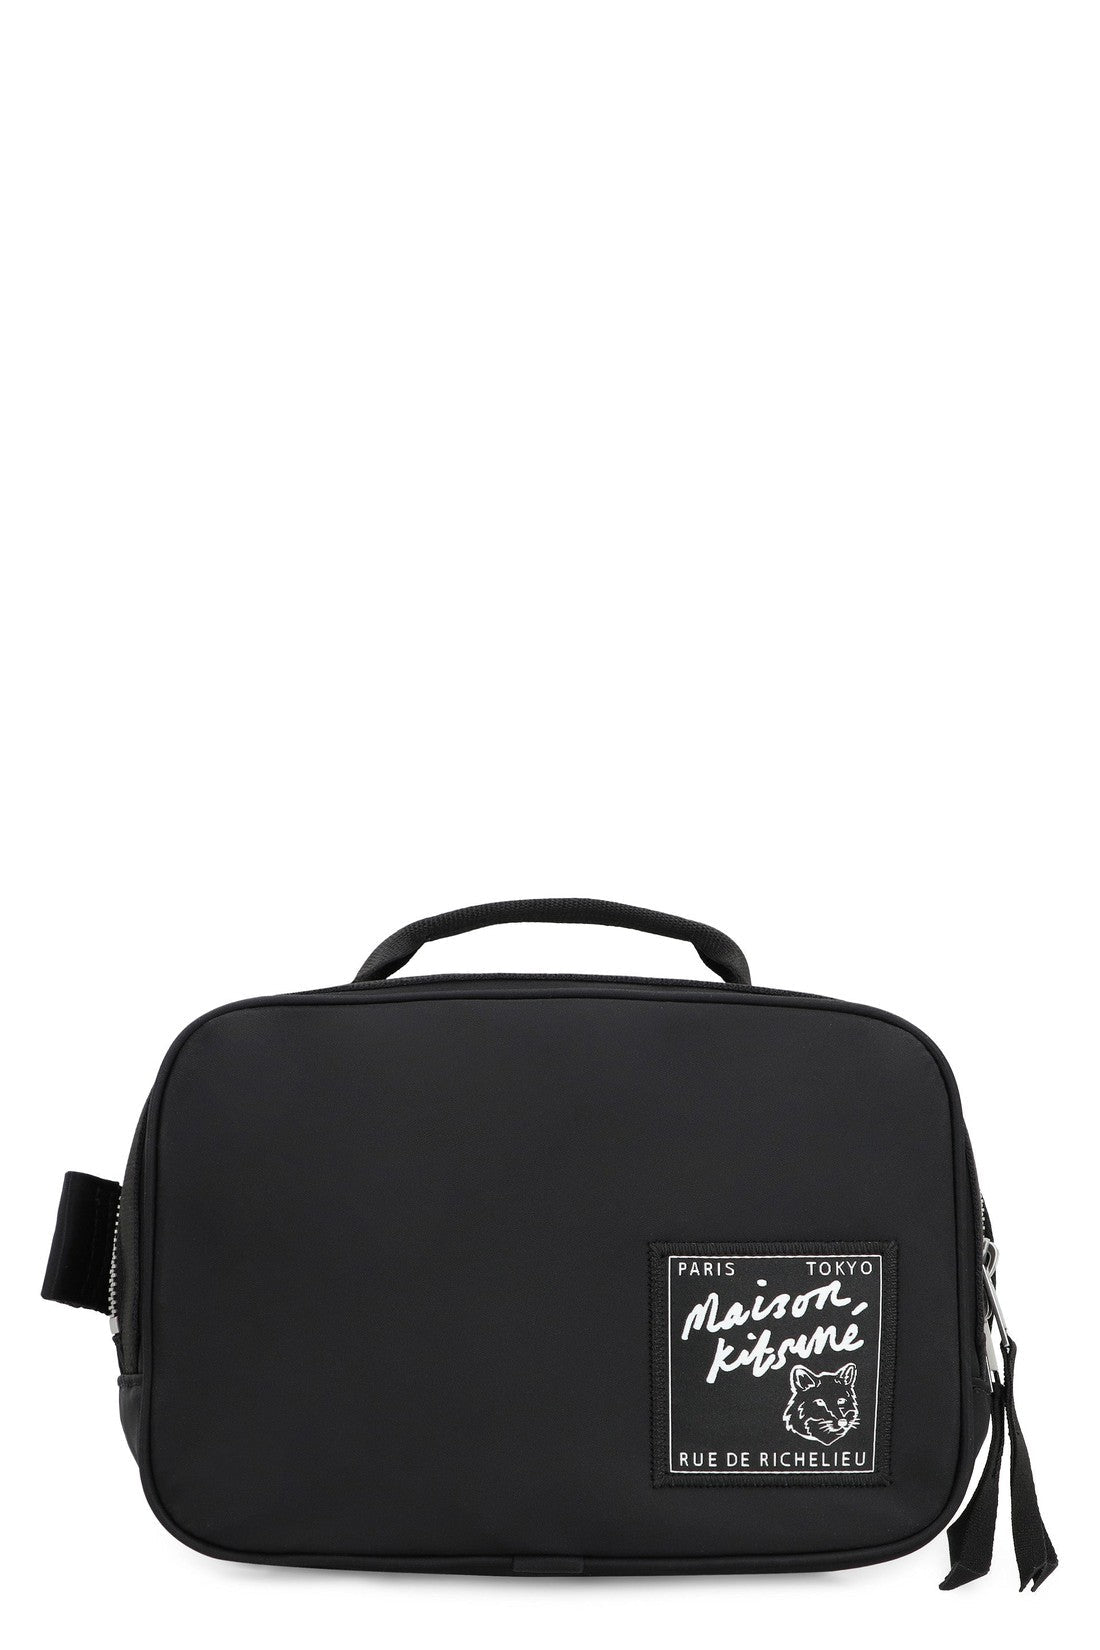 Maison Kitsuné-OUTLET-SALE-The Traveller nylon belt bag-ARCHIVIST